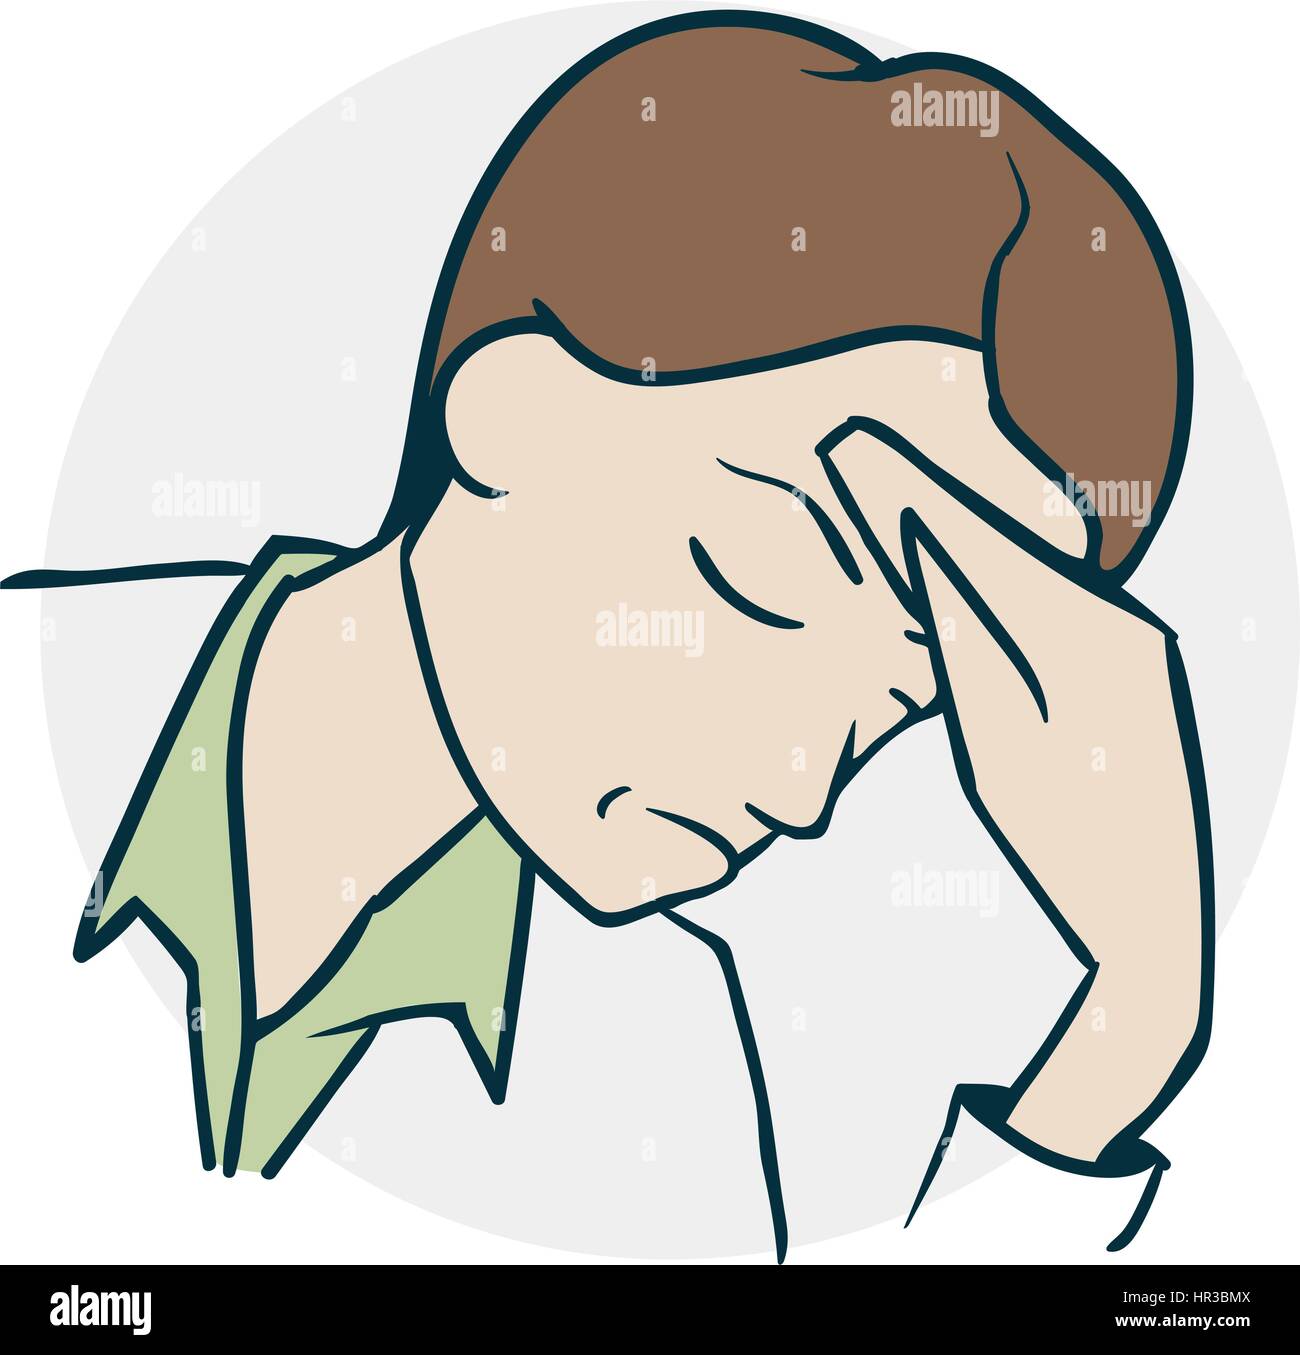 Starke Kopfschmerzen, schreien vor Schmerzen. Symbol zu medizinischen Themen. Beispiel für einen lustigen Cartoon-Stil Stock Vektor